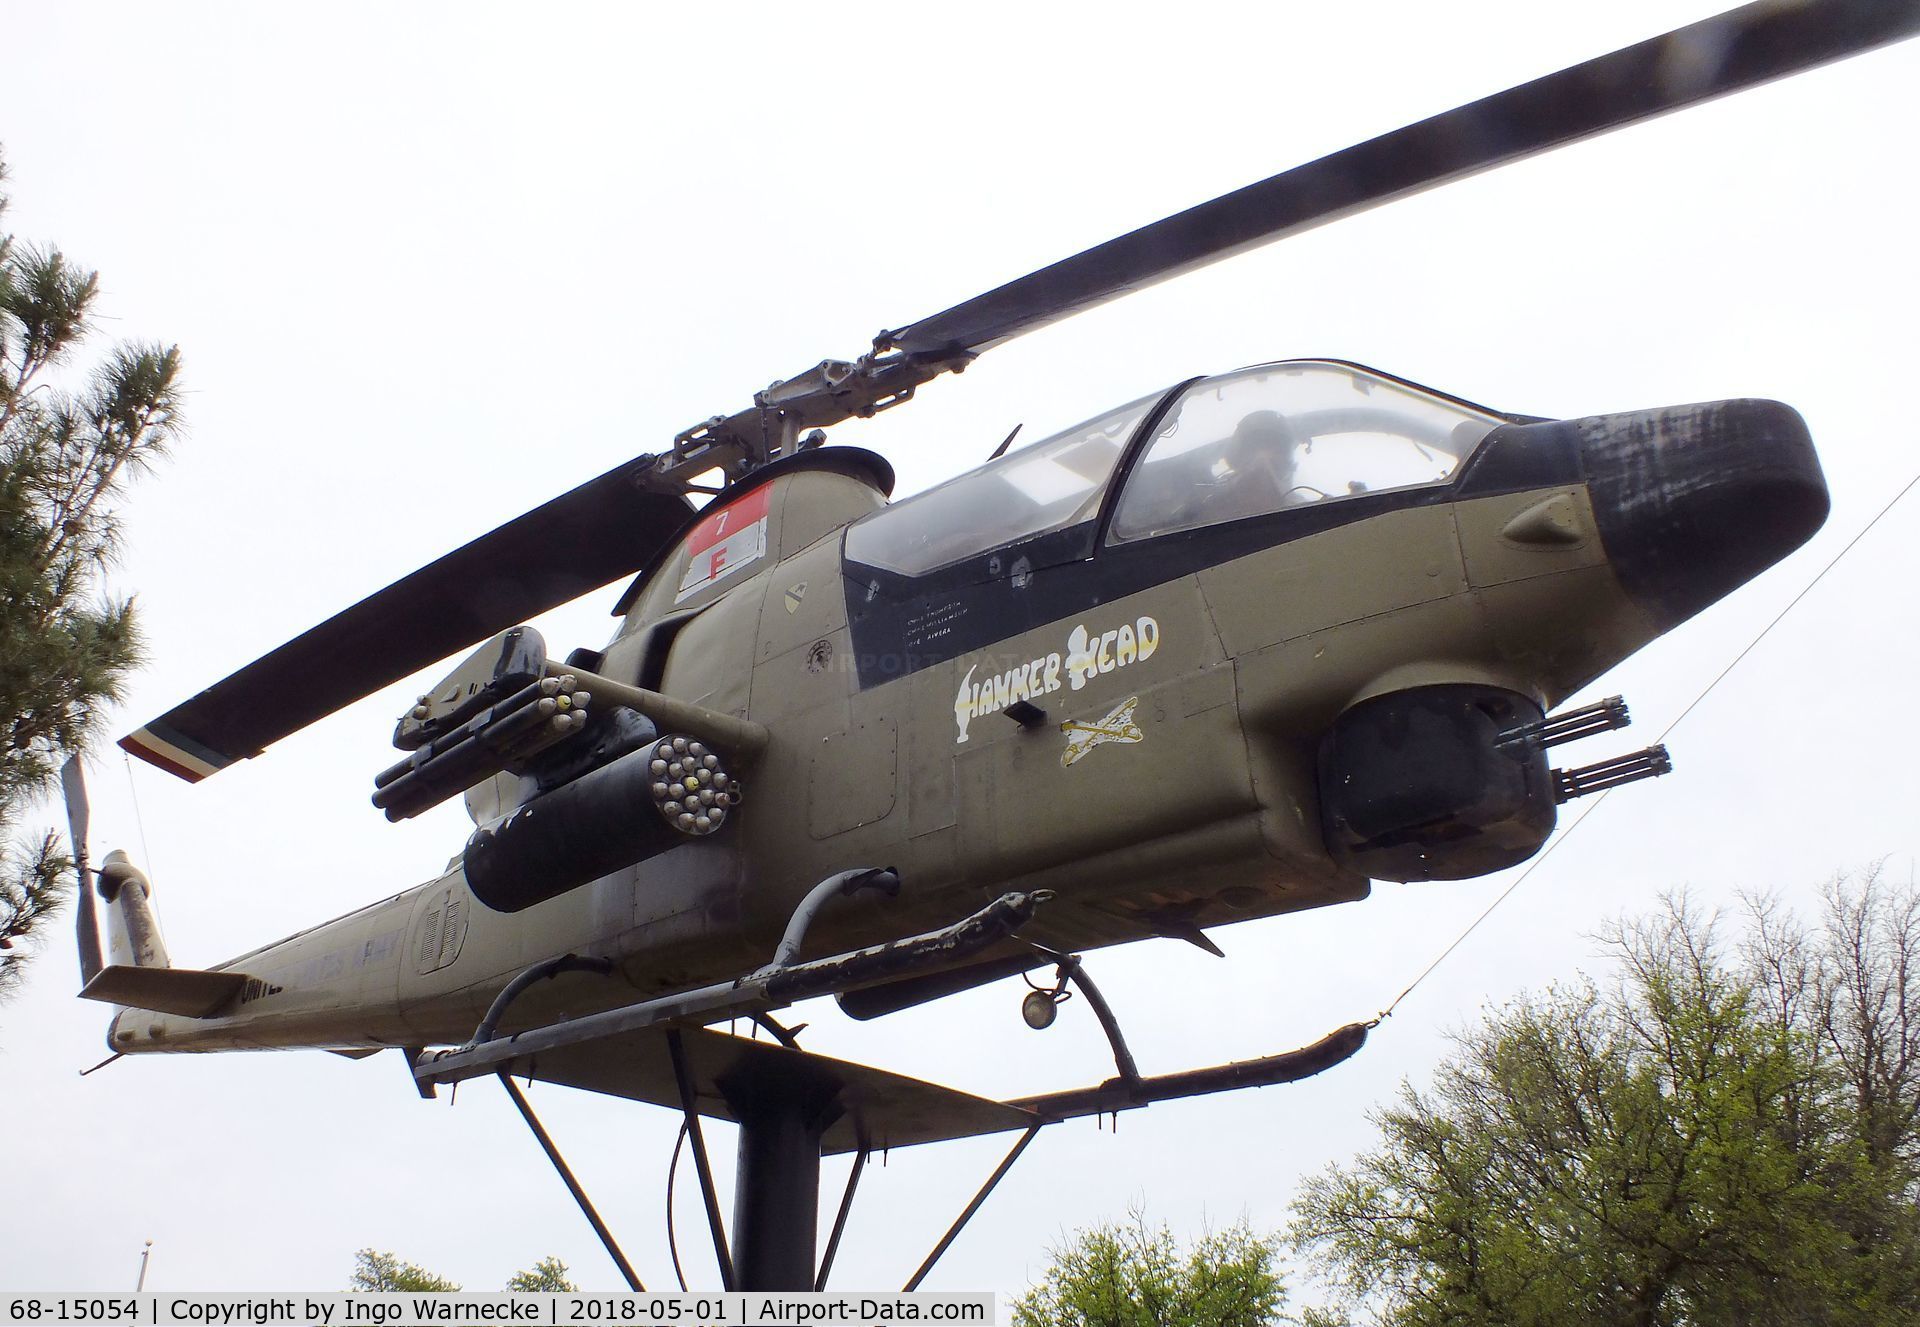 68-15054, 1968 Bell AH-1S Cobra C/N 20588, Bell AH-1S Cobra at the Vietnam Memorial, Big Spring TX